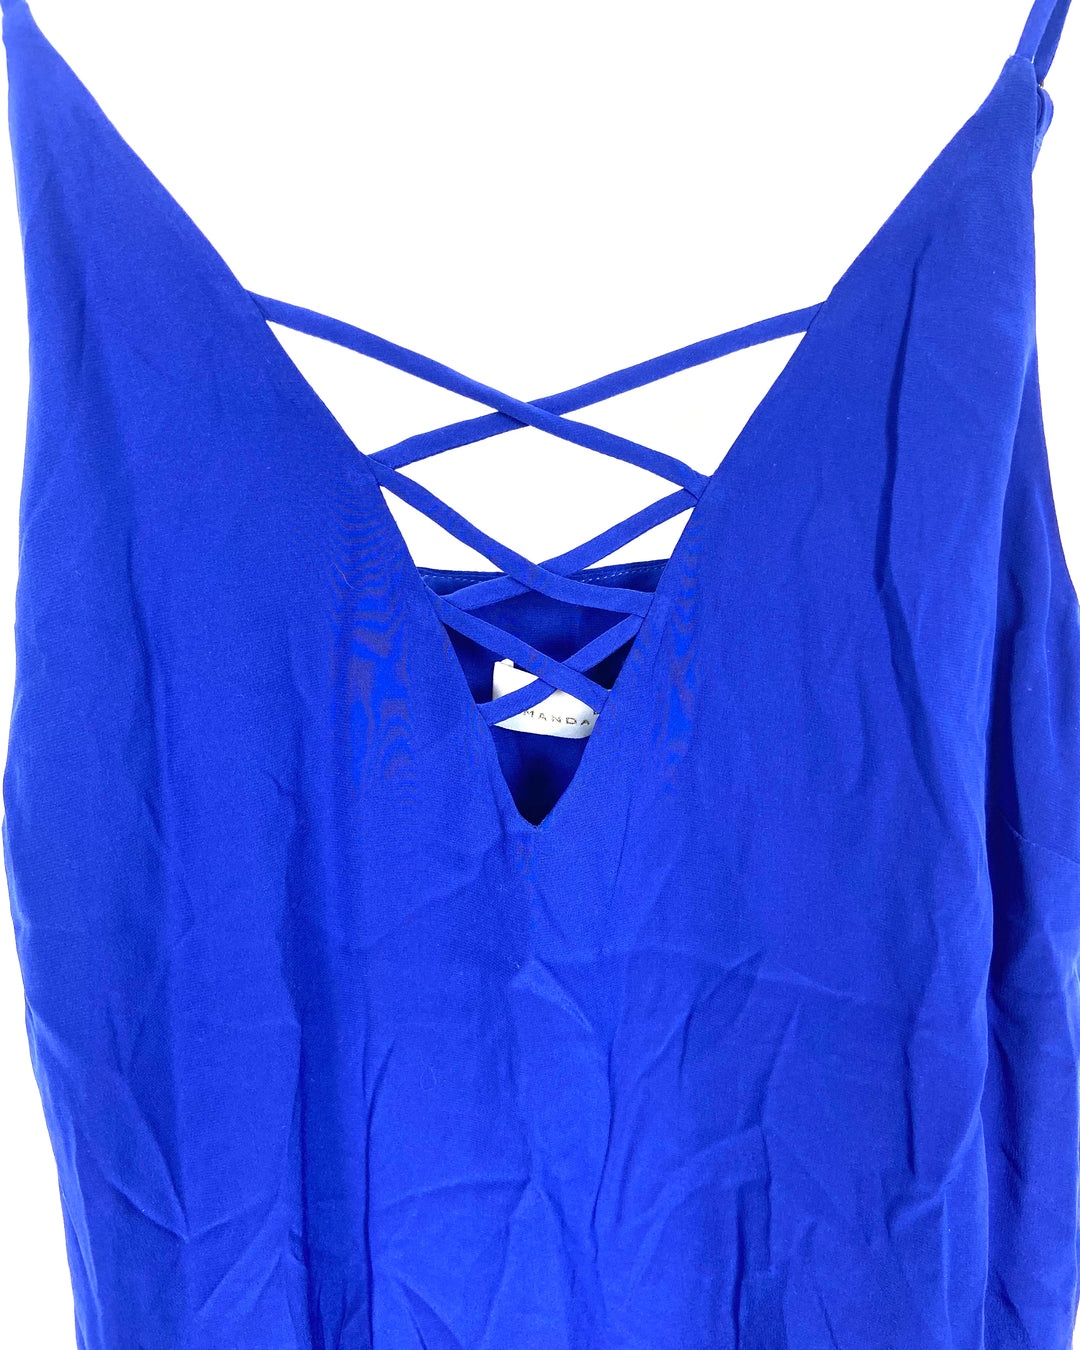 Blue Criss Cross Dress - Size 4-6